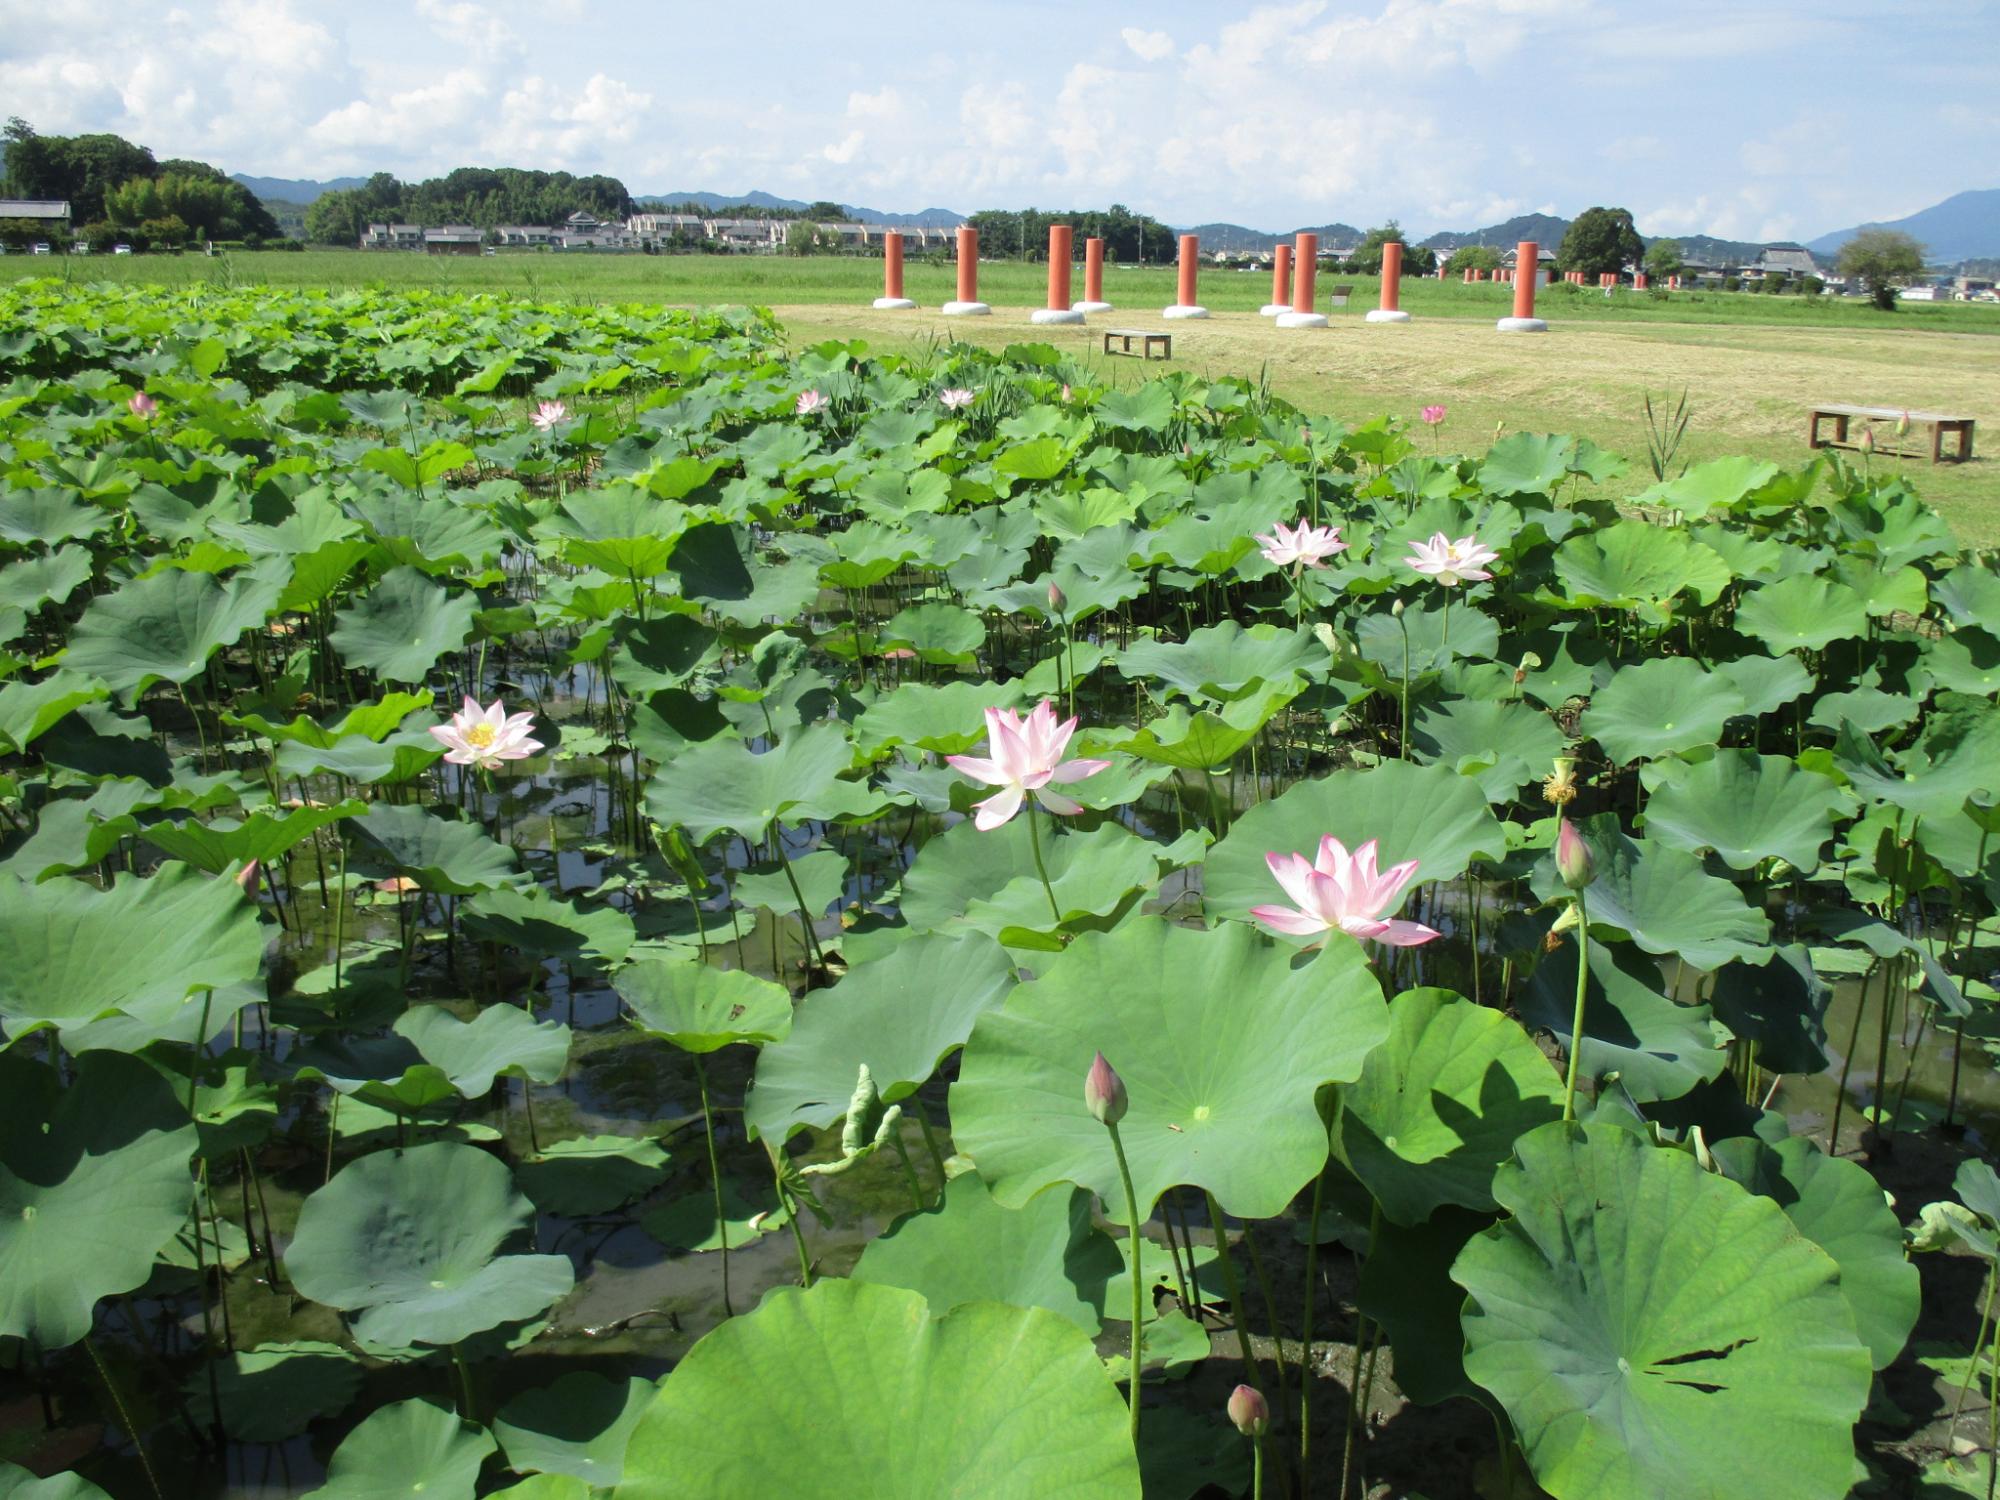 7月15日に撮影された満開の花をつける藤原宮跡蓮ゾーン南面の写真